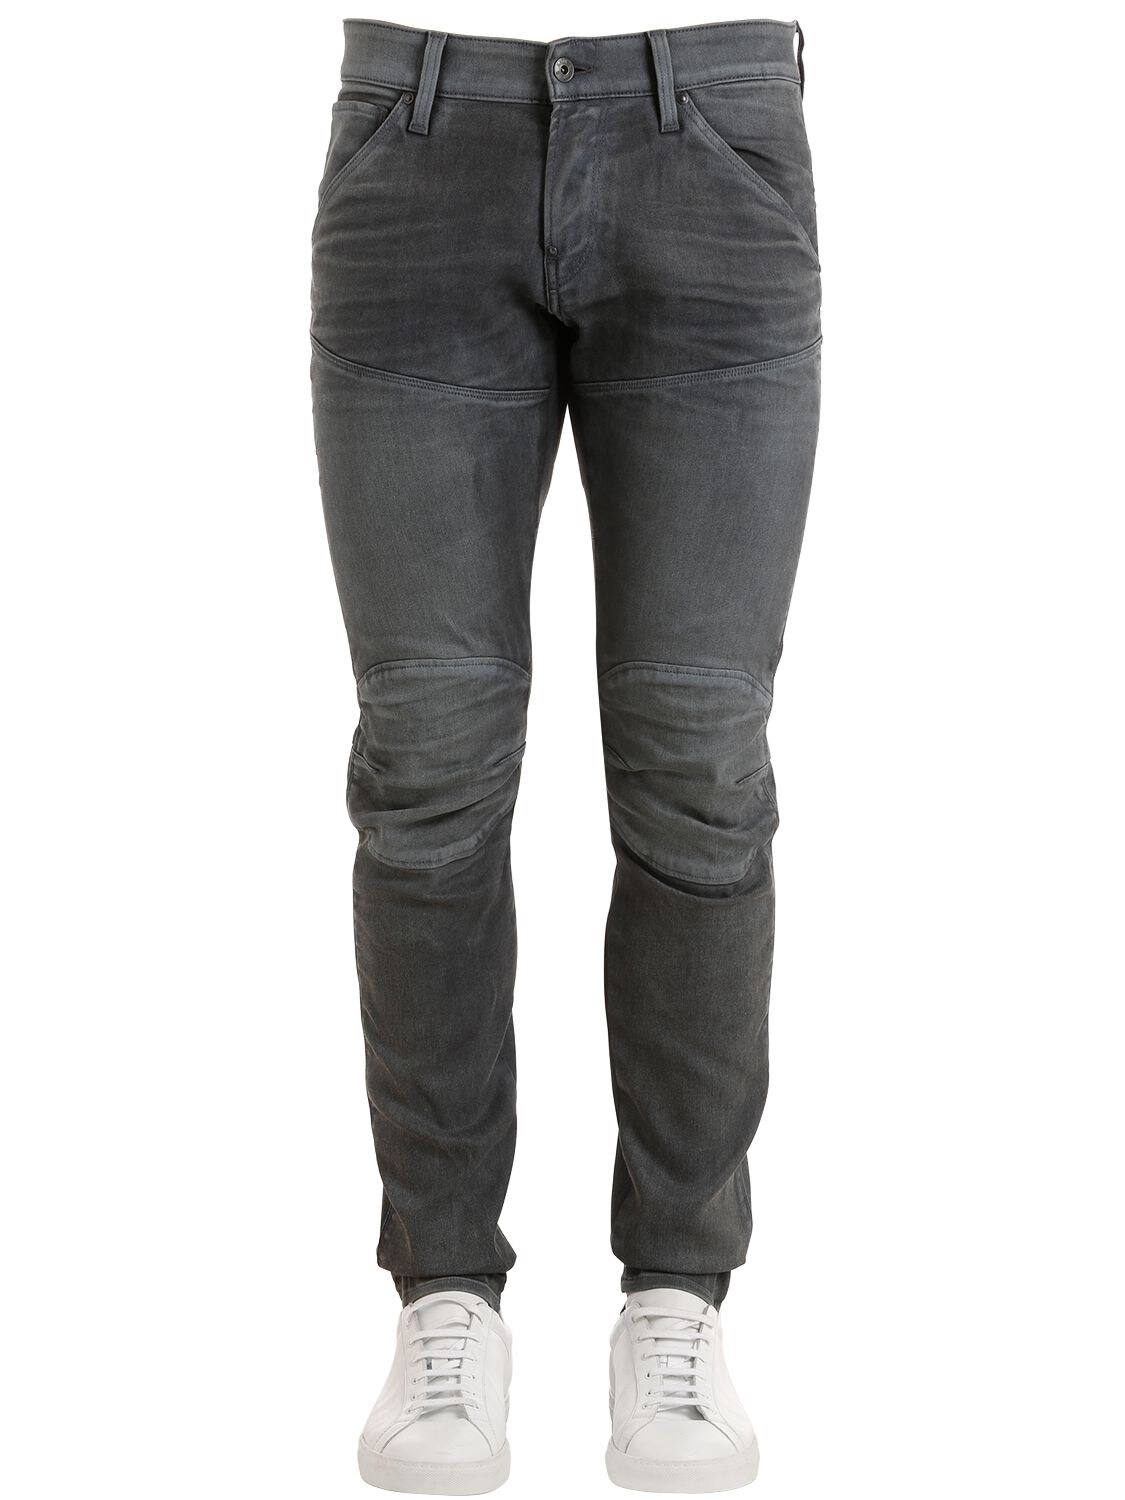 G-star 5620 3d Super Slim Washed Denim Jeans In Grey